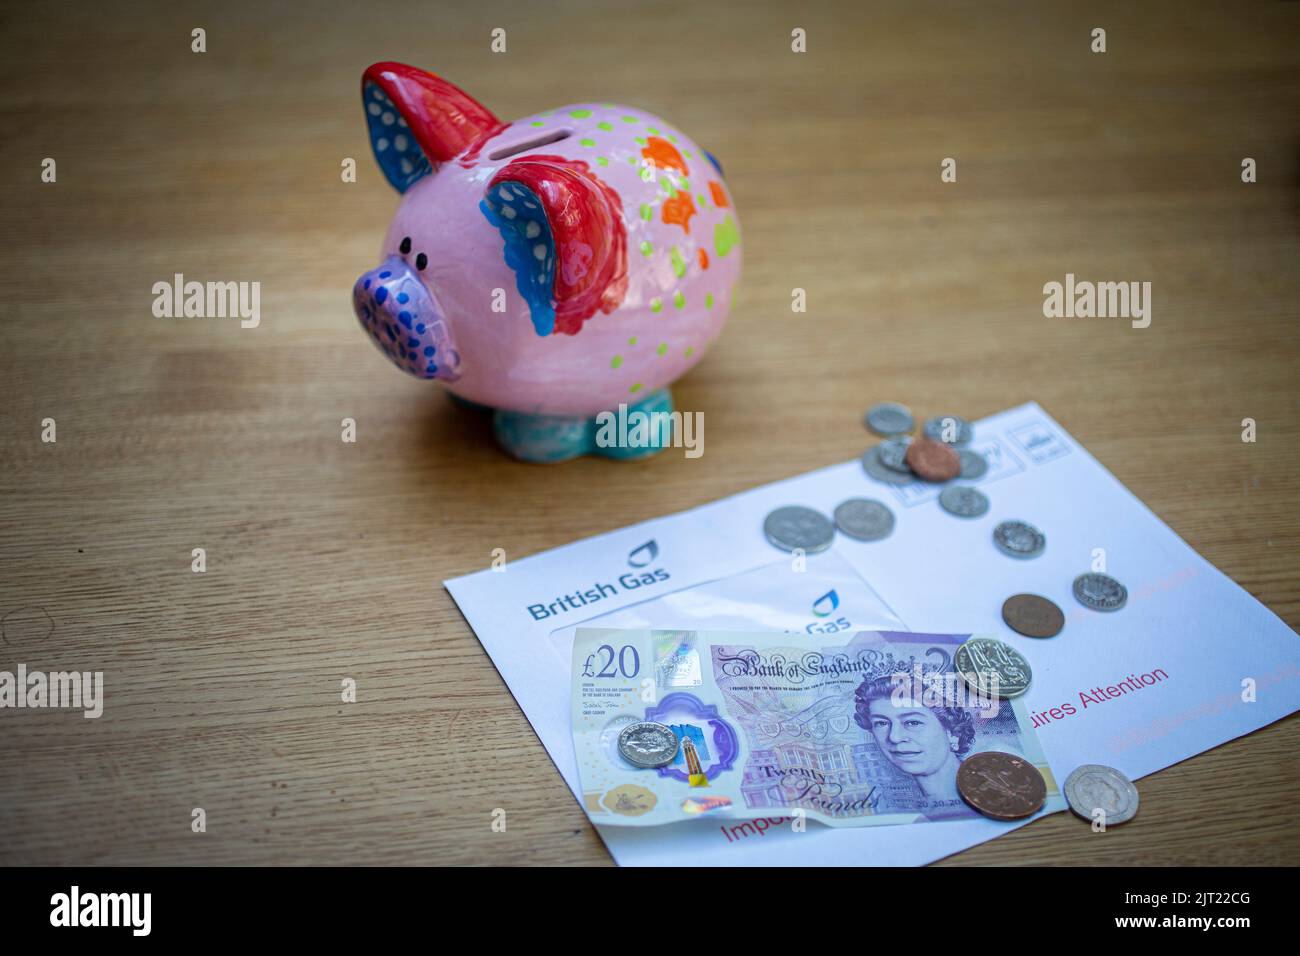 Piggy bank con bolletta del gas, banconote inglesi £20 e monete come razzo bollette del carburante Foto Stock